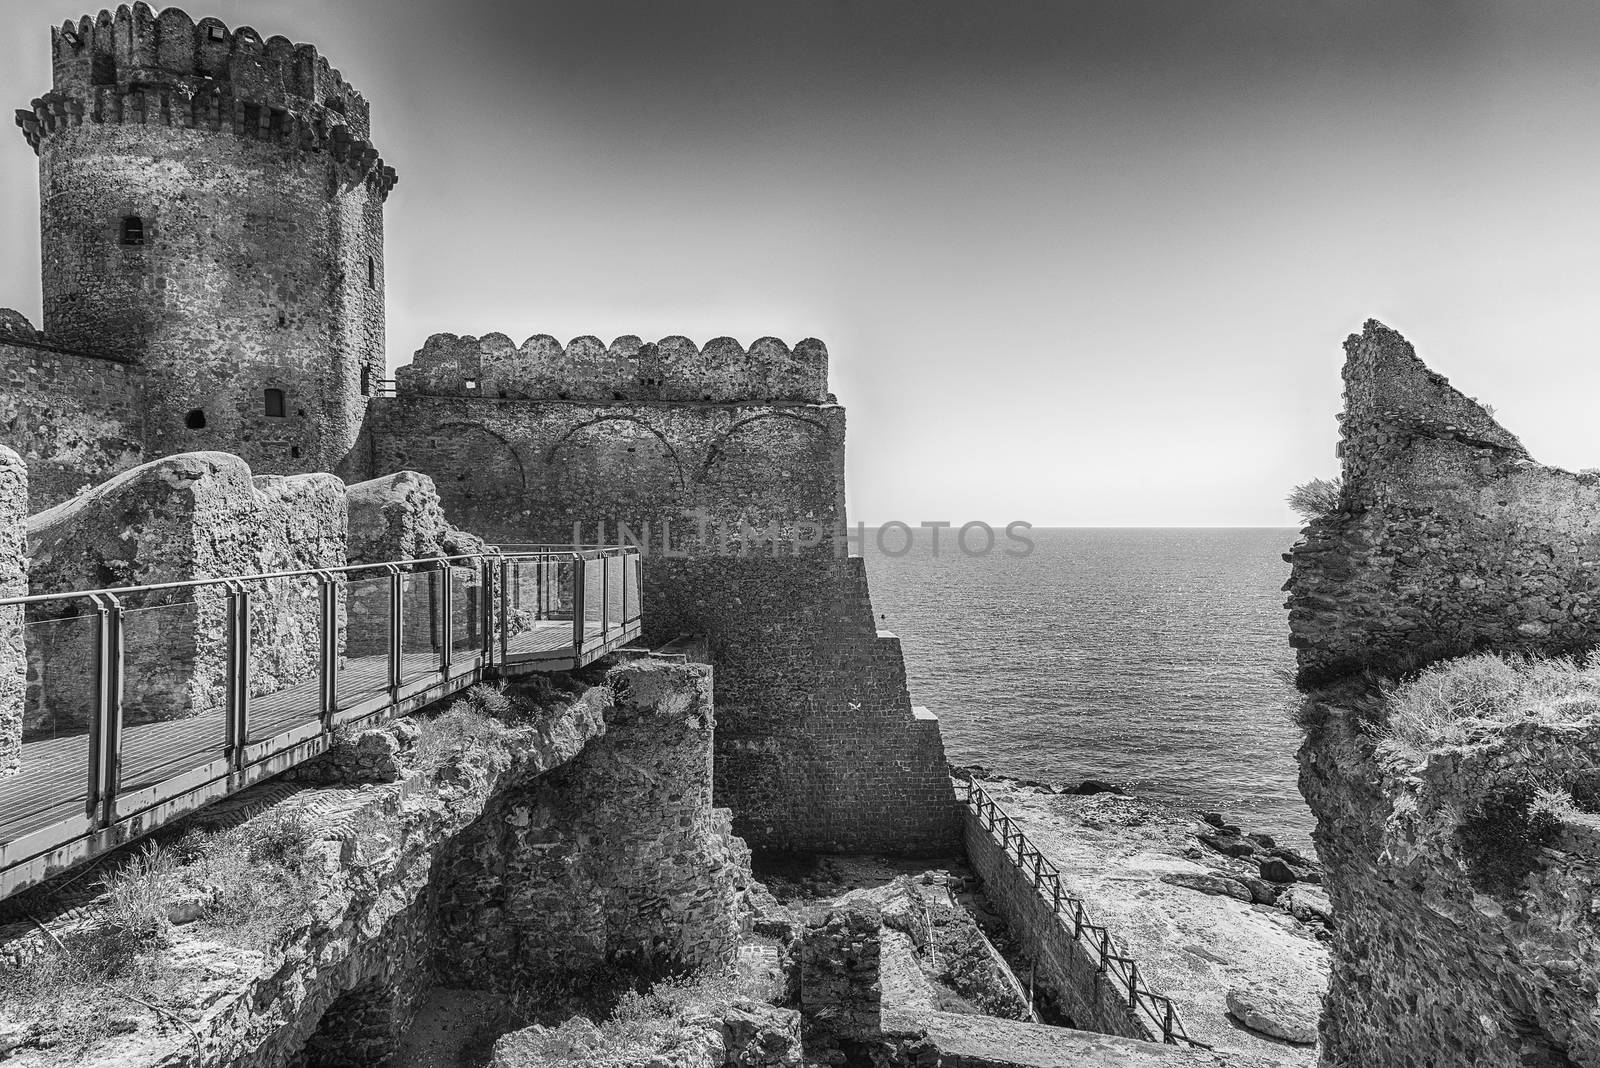 View of the Aragonese Castle, Isola di Capo Rizzuto, Italy by marcorubino